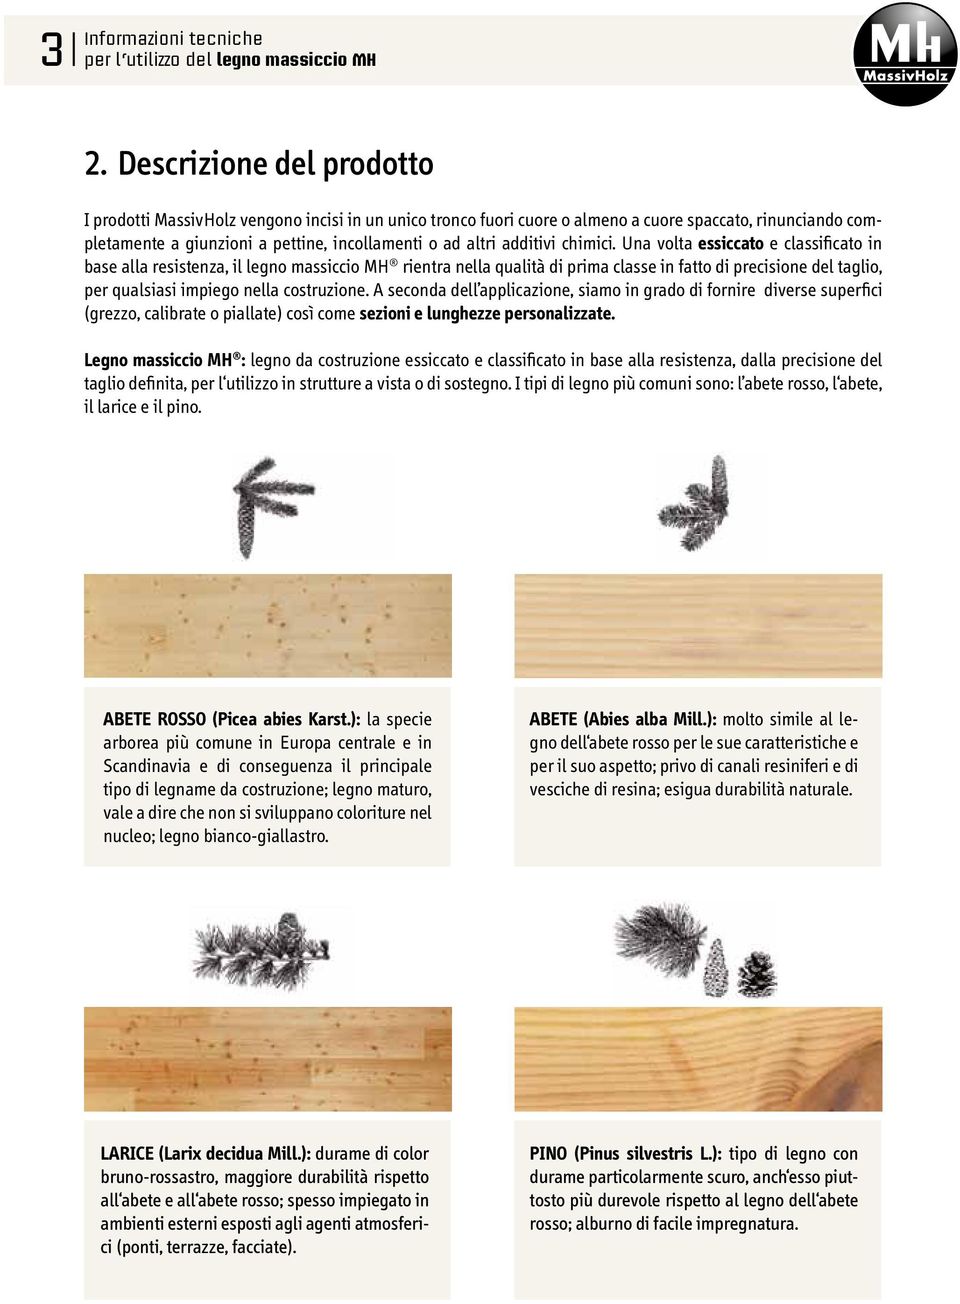 Una volta essiccato e classificato in base alla resistenza, il legno massiccio MH rientra nella qualità di prima classe in fatto di precisione del taglio, per qualsiasi impiego nella costruzione.